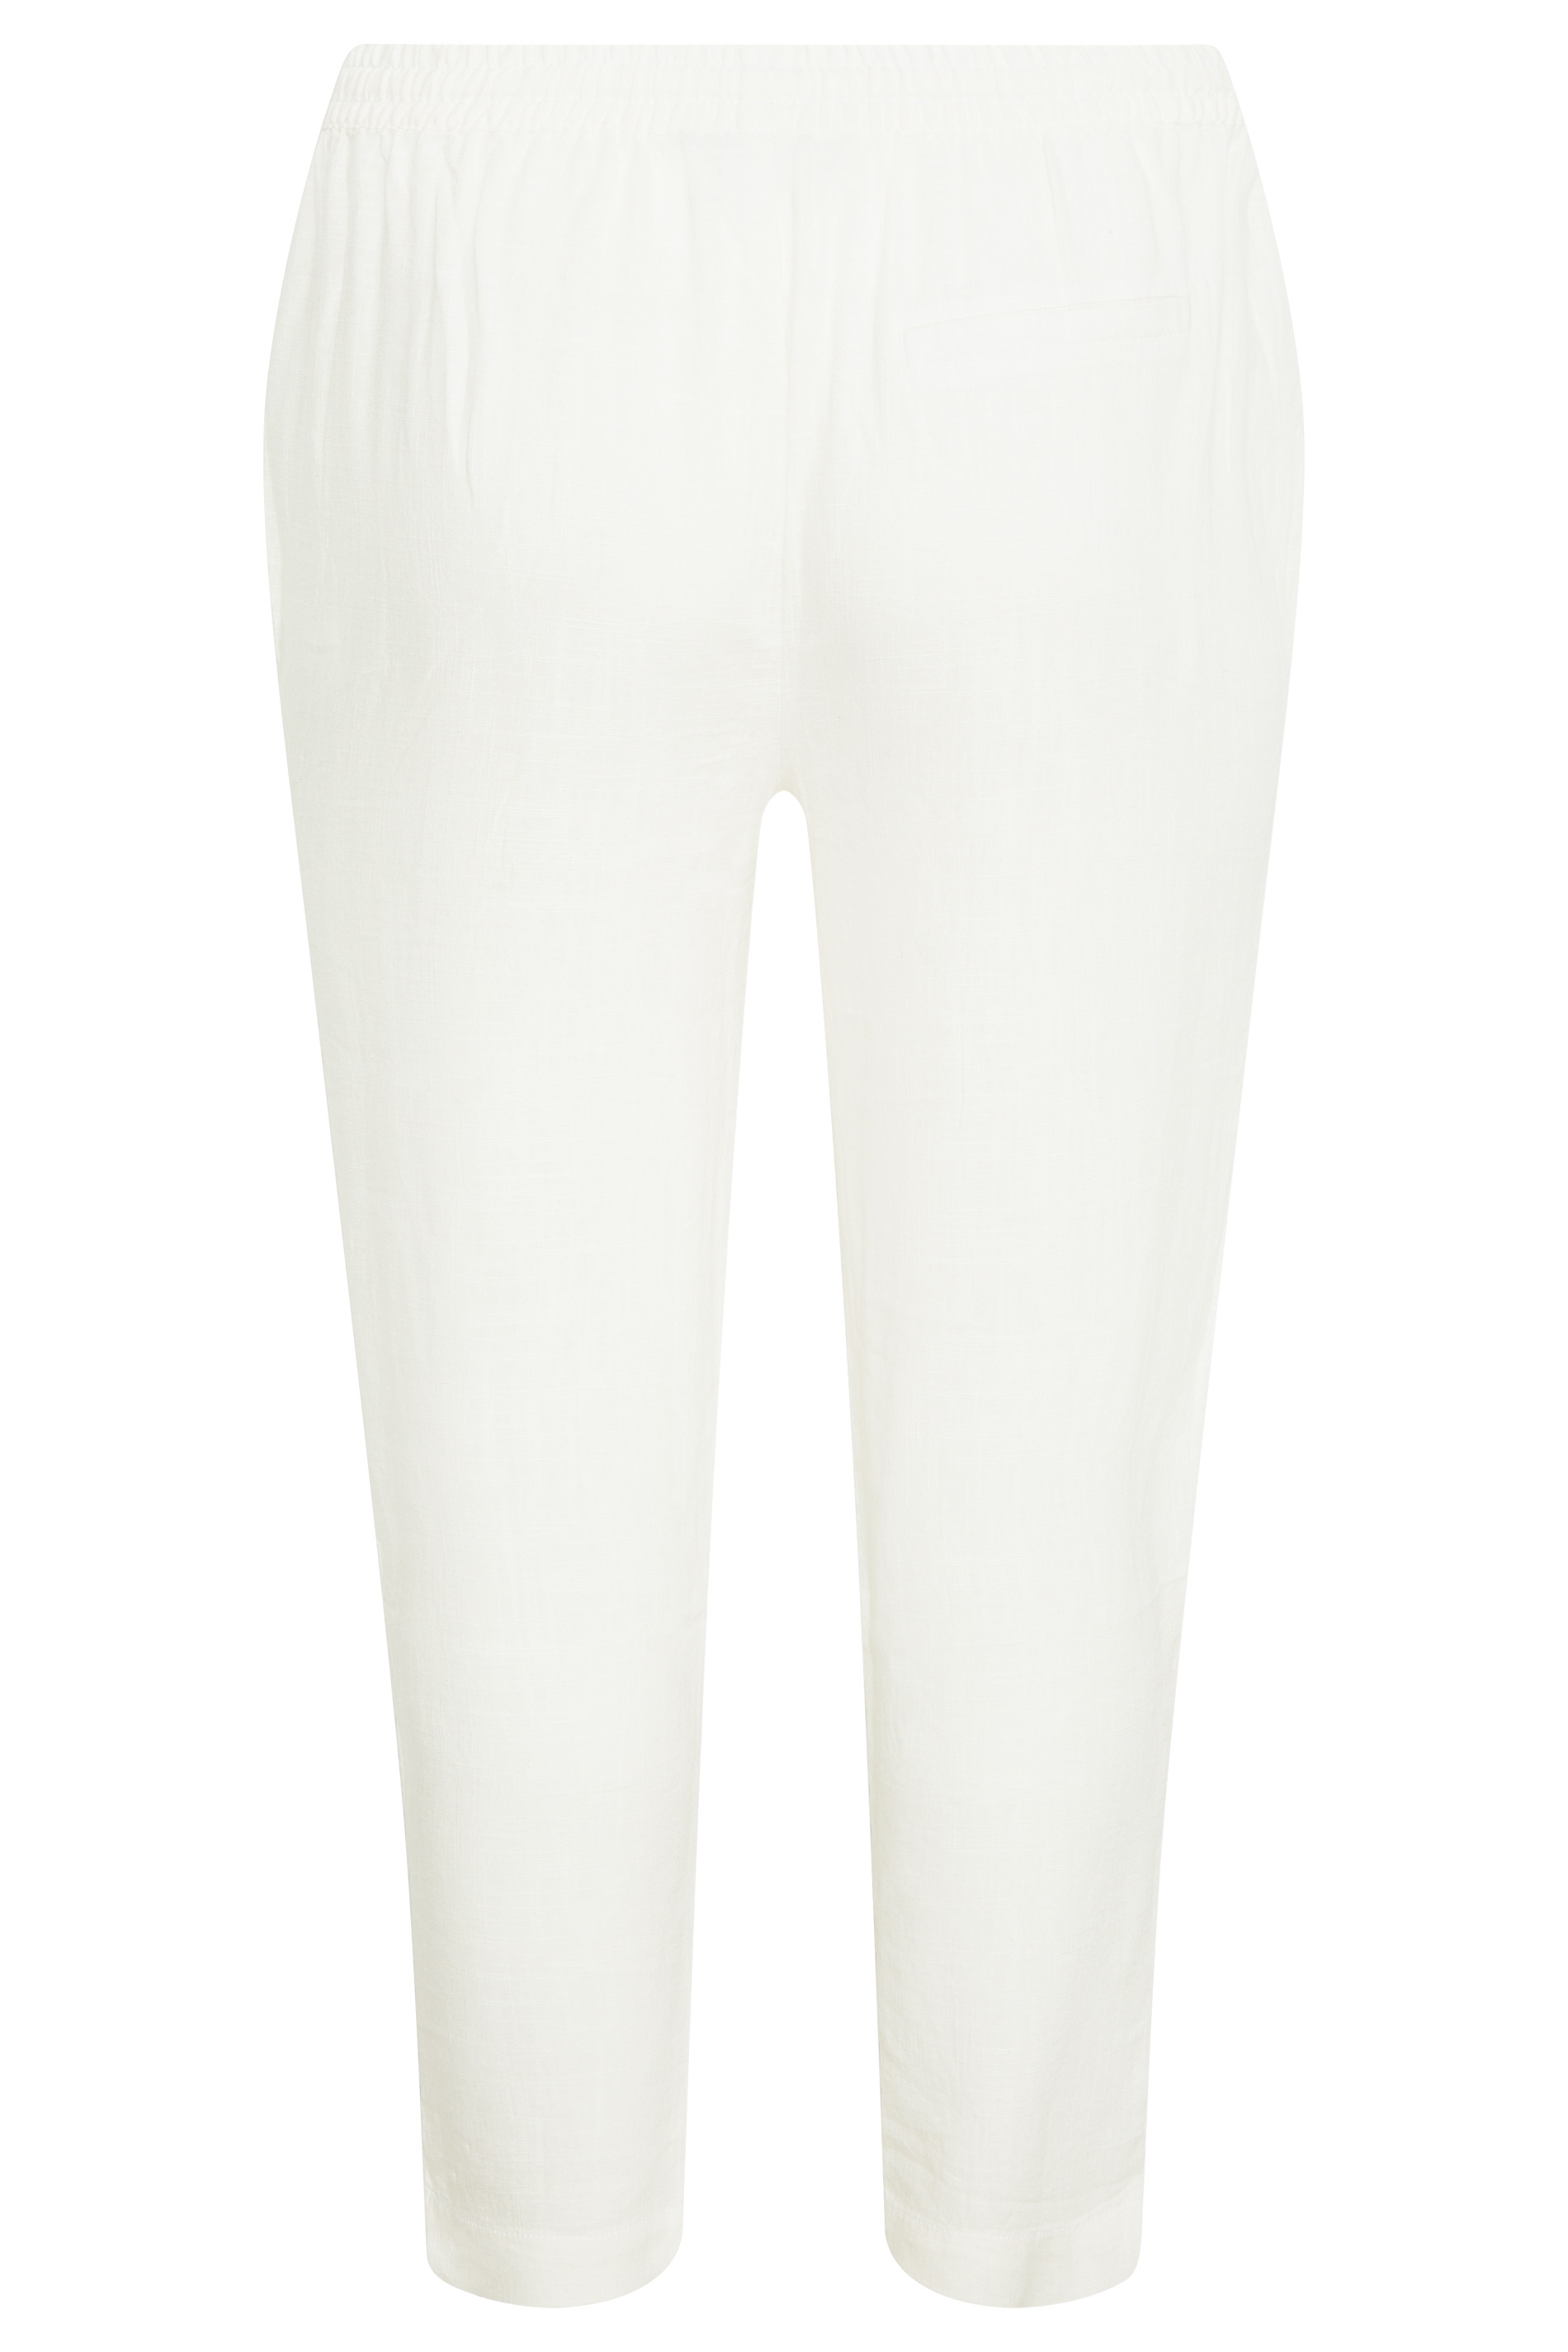 Grande taille  Pantalons Grande taille  Joggings | Jogging Blanc Léger Coupe Droite - NZ86752